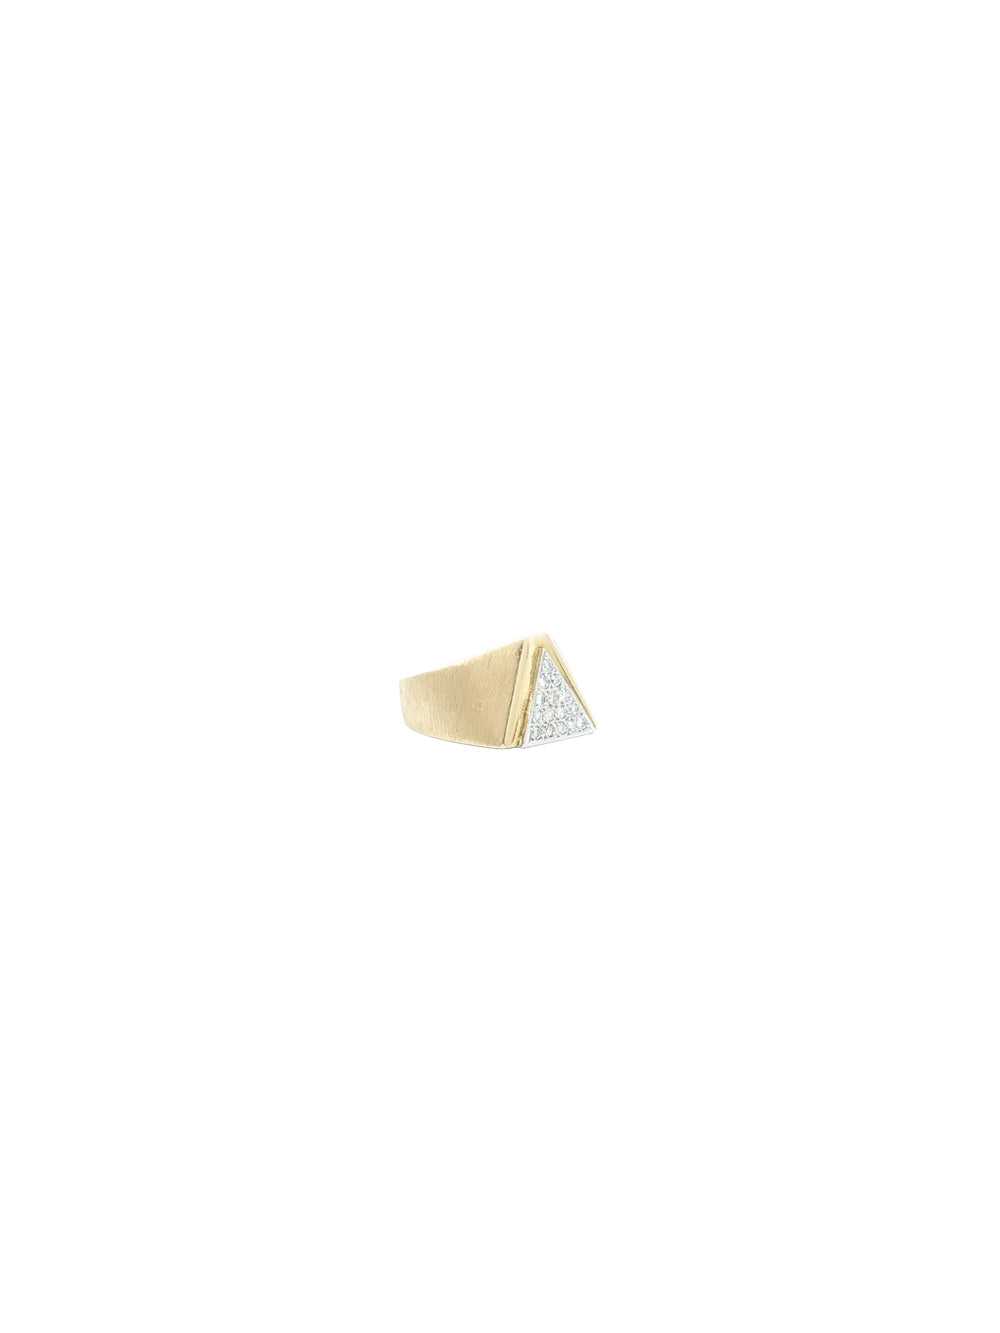 14K Diamond Geometric Ring - image 7